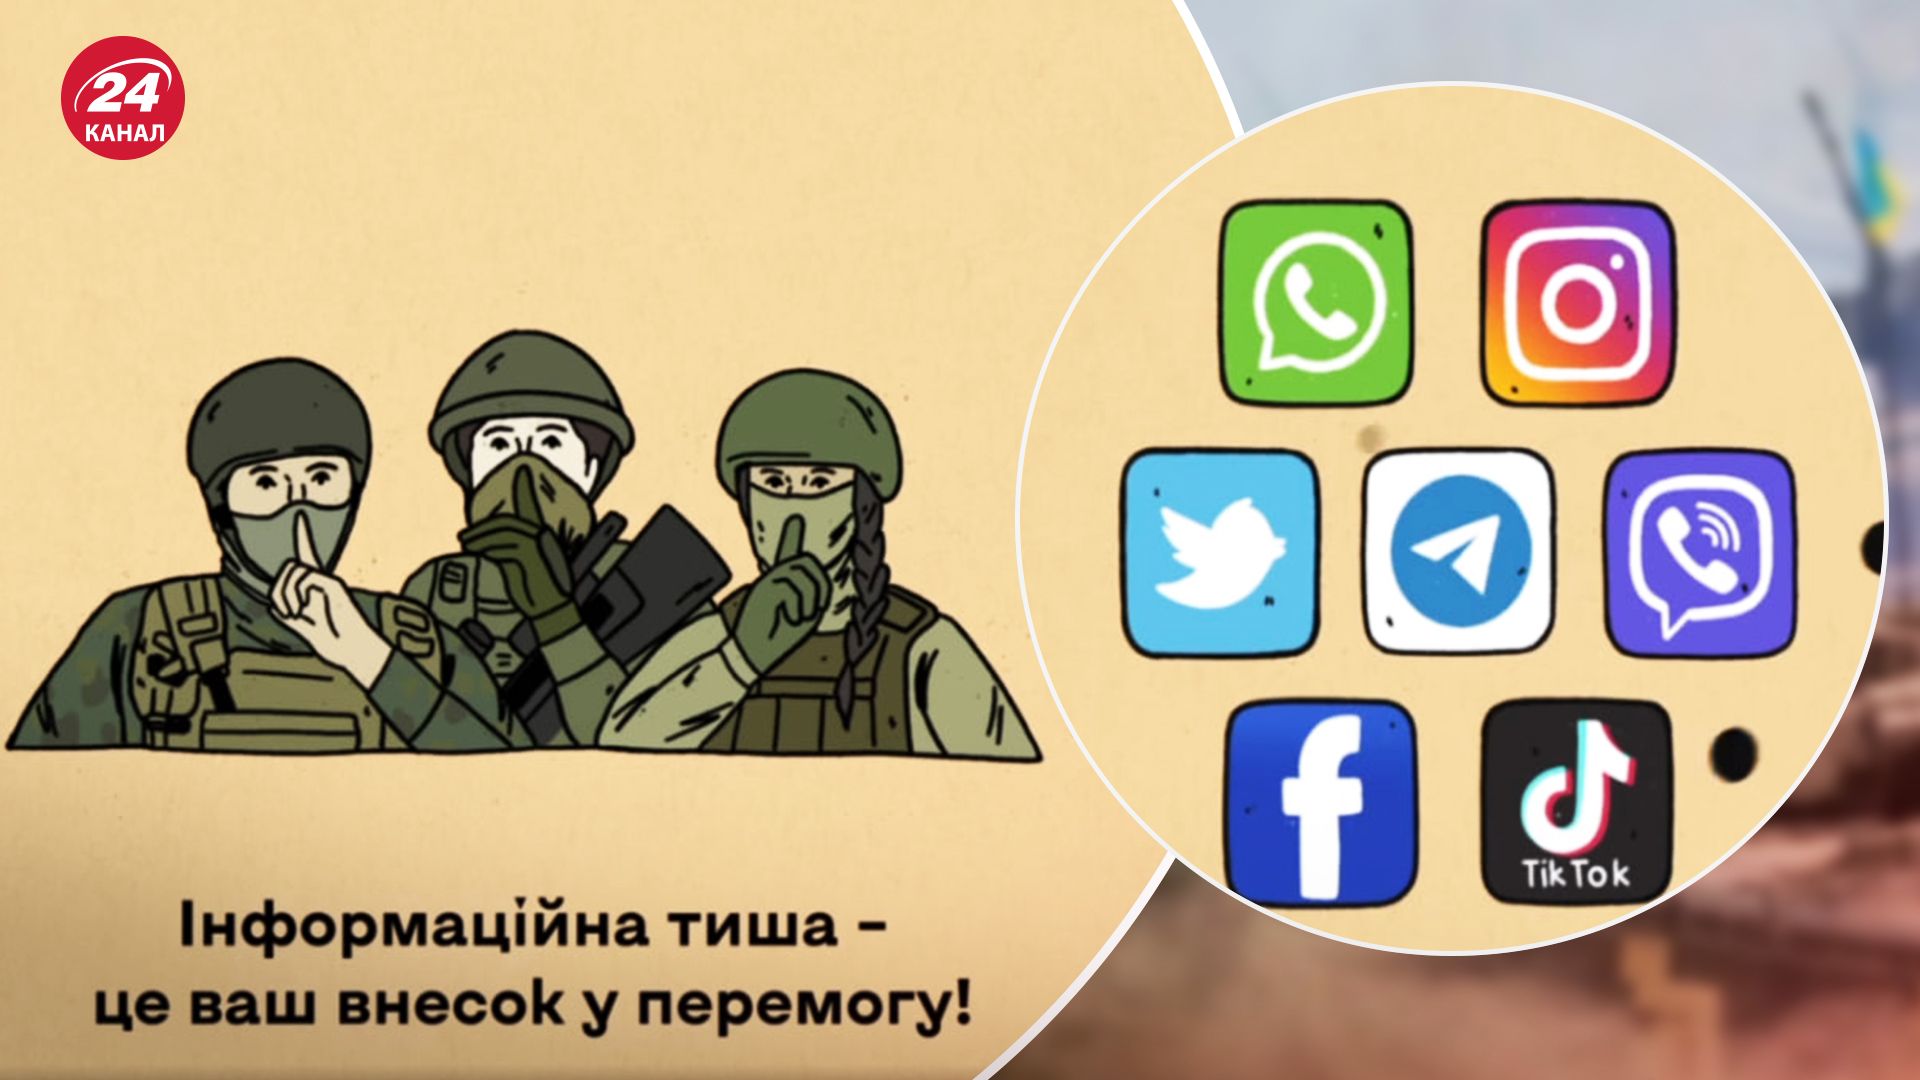 По меньшей мере 60% разведданных Россия получает через социальные сети